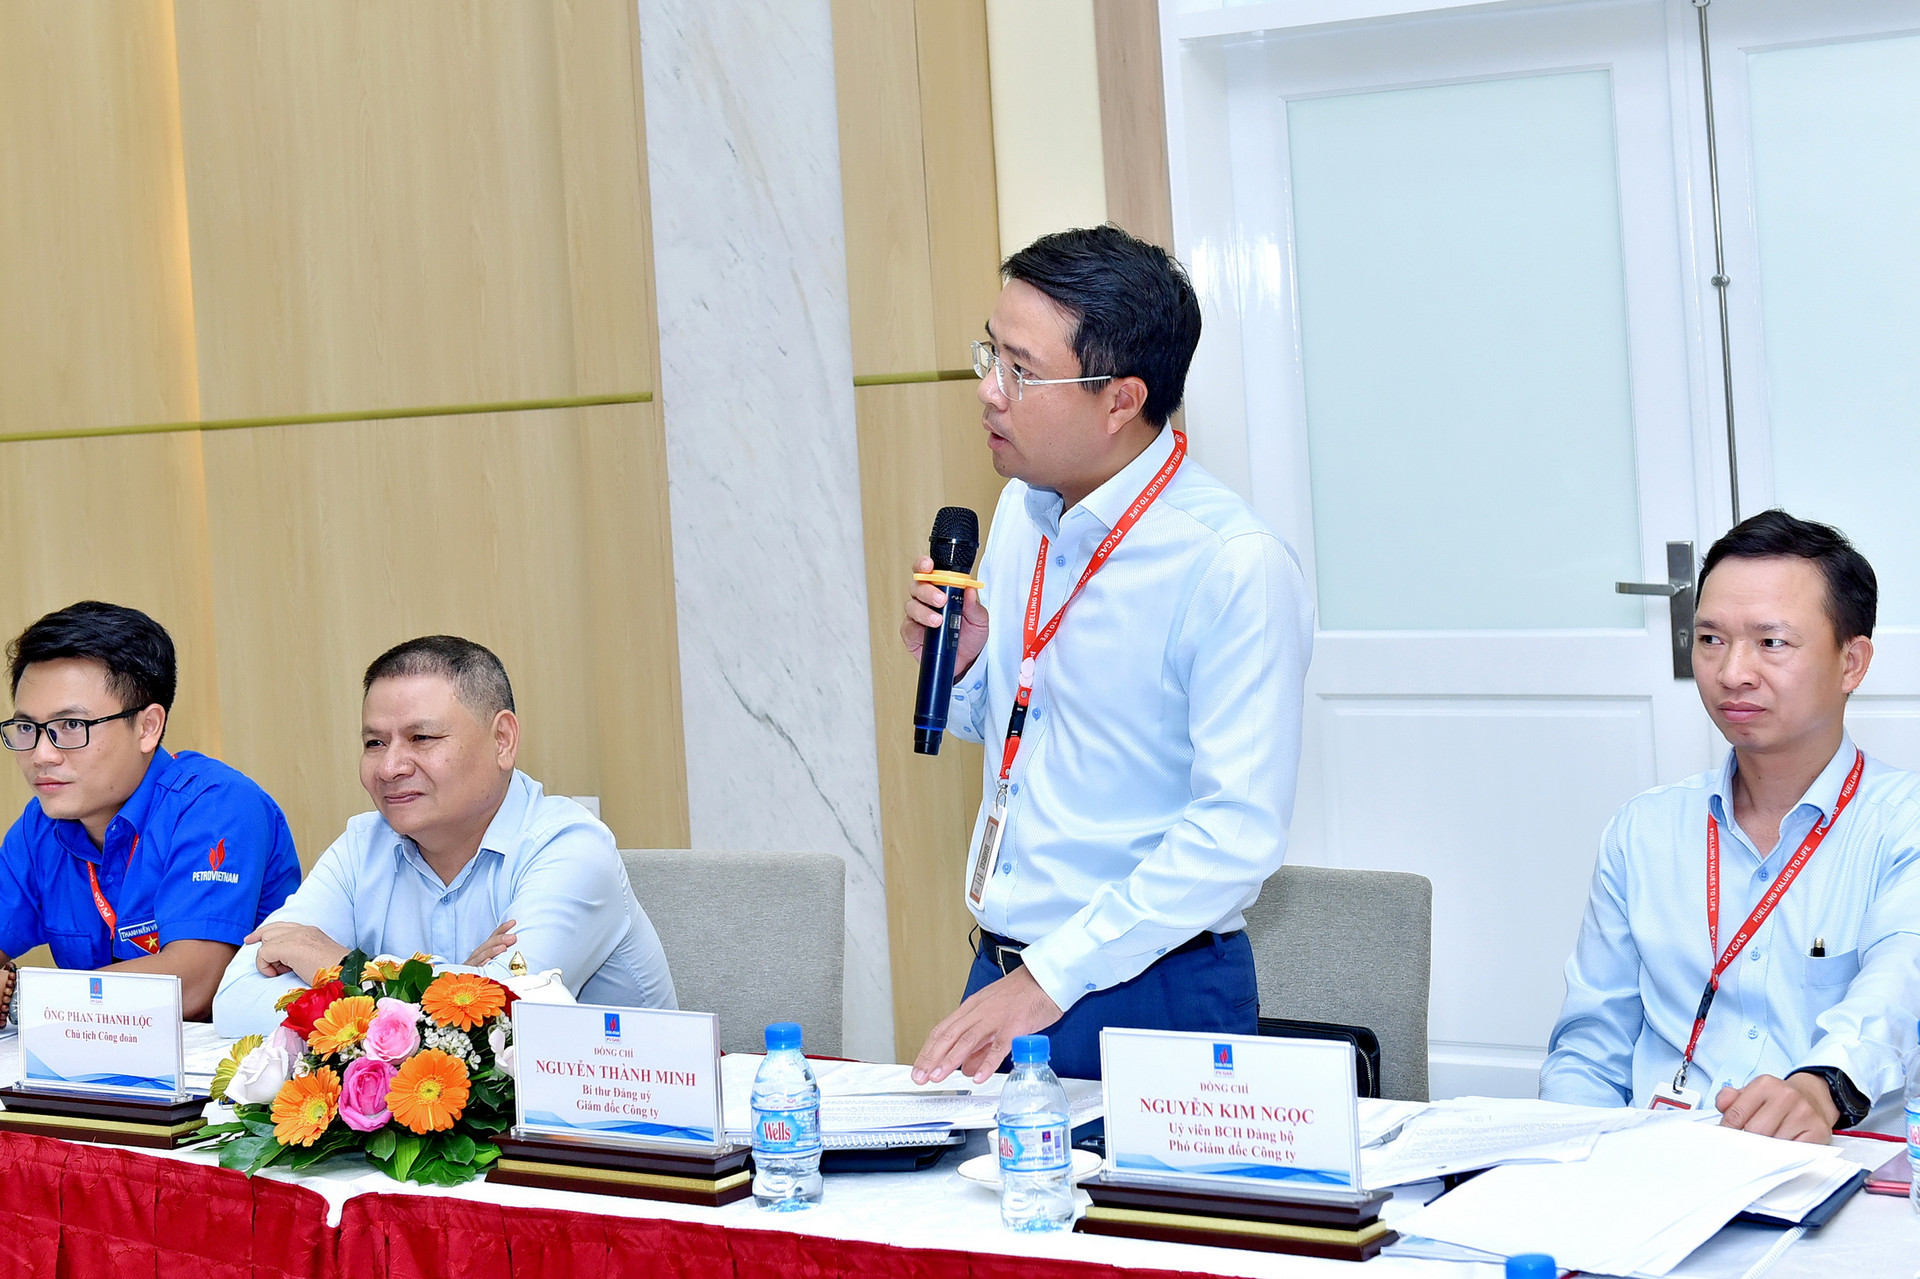 Đồng chí Nguyễn Thành Minh – Bí thư Đảng ủy, Giám đốc Công ty phát biểu đánh giá cao vị trí, vai trò cũng như sự đóng góp của Đoàn viên thanh niên KĐN.